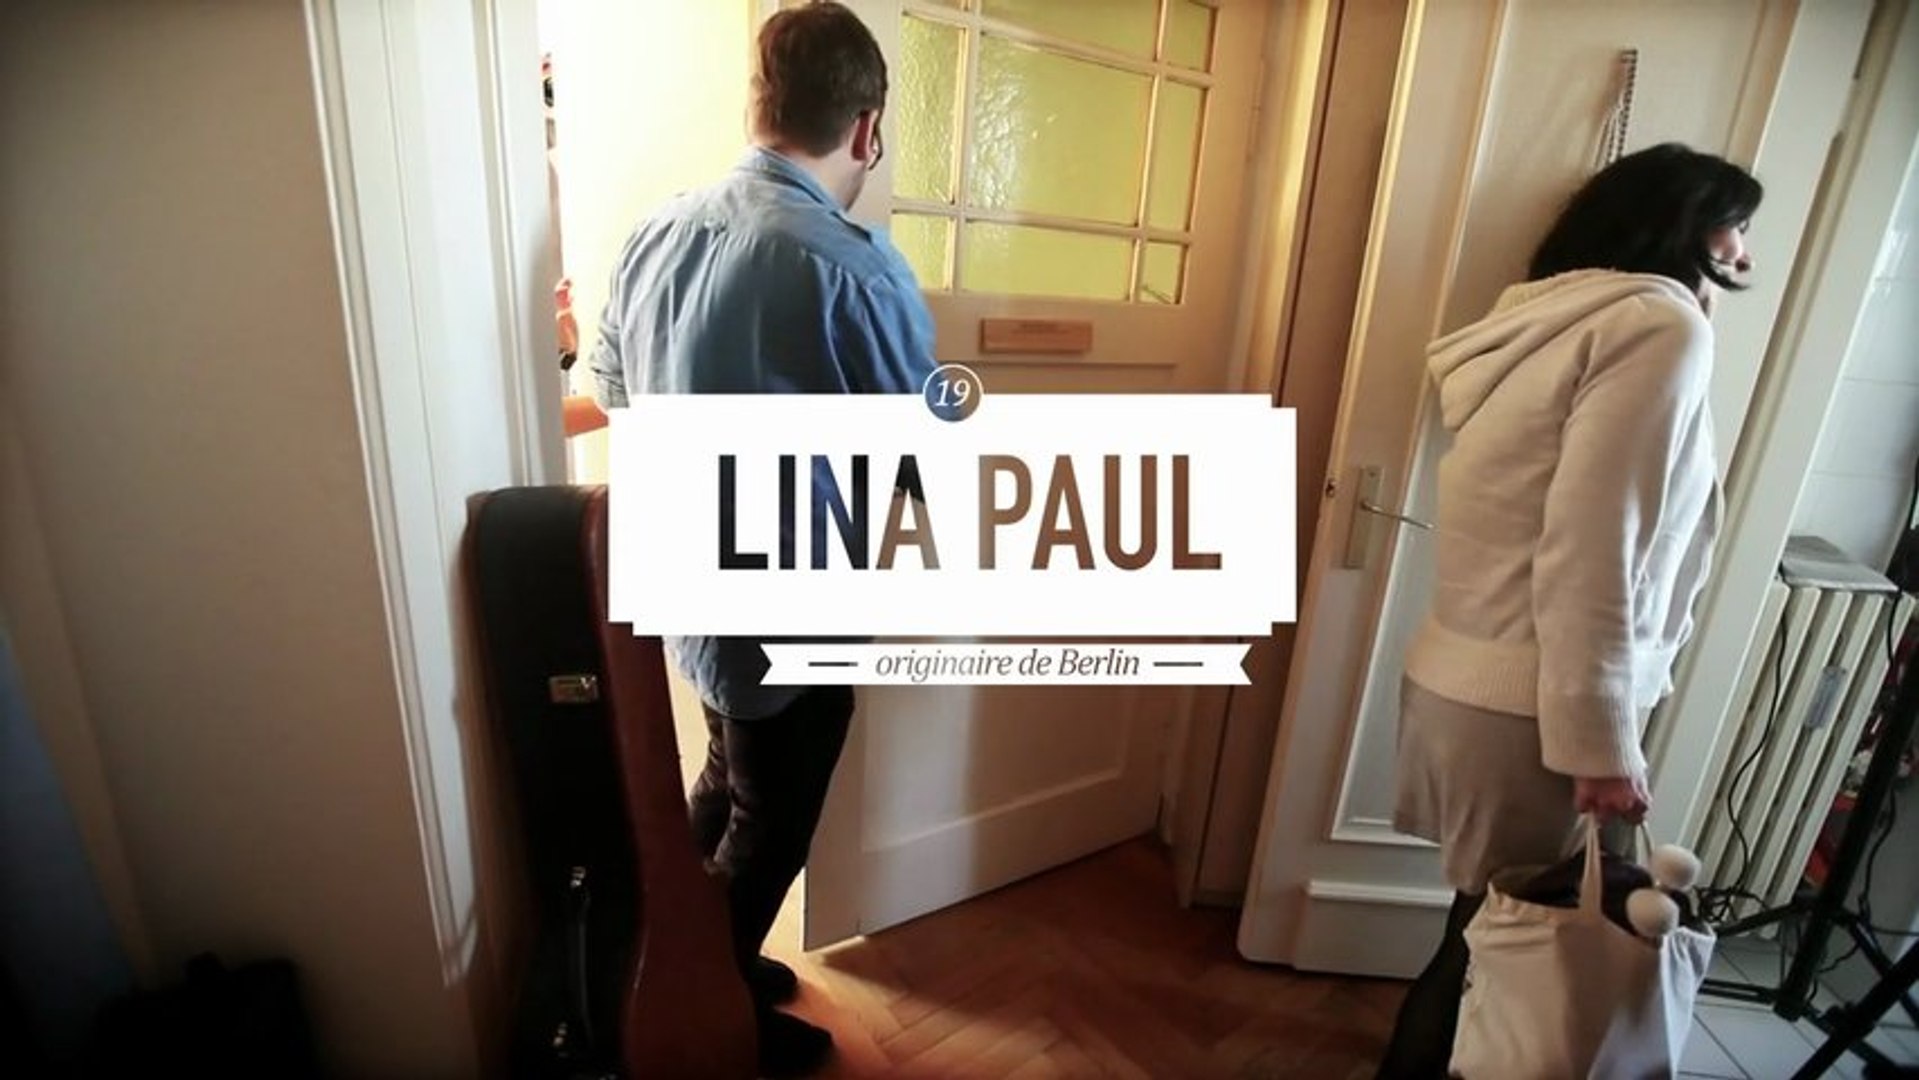 Lina Paul